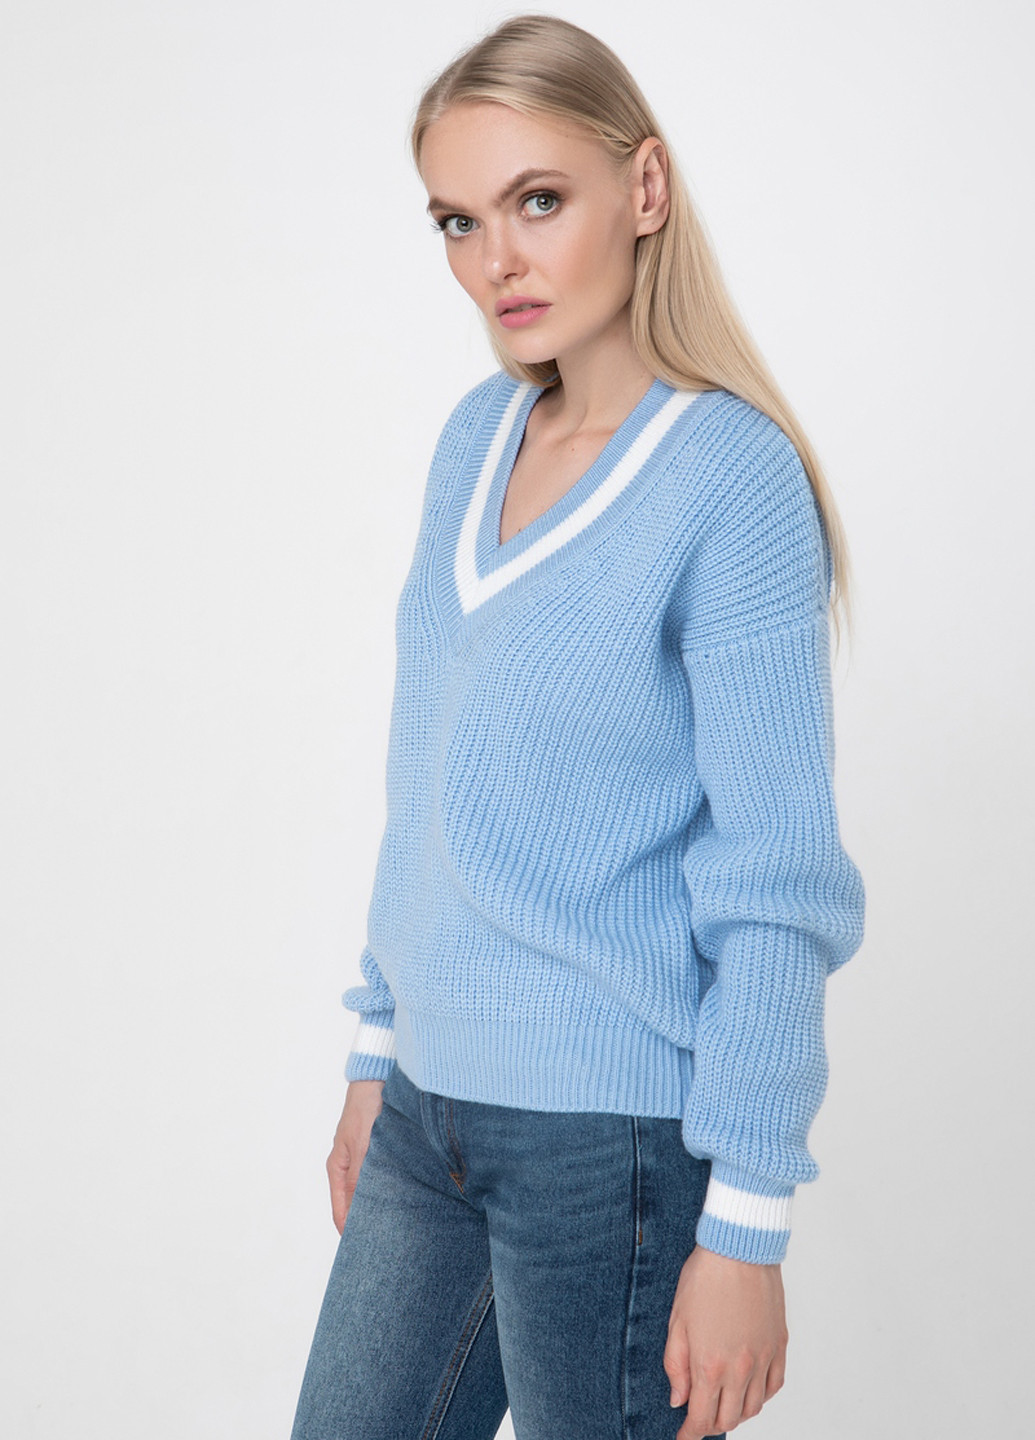 Голубой демисезонный пуловер пуловер Sewel